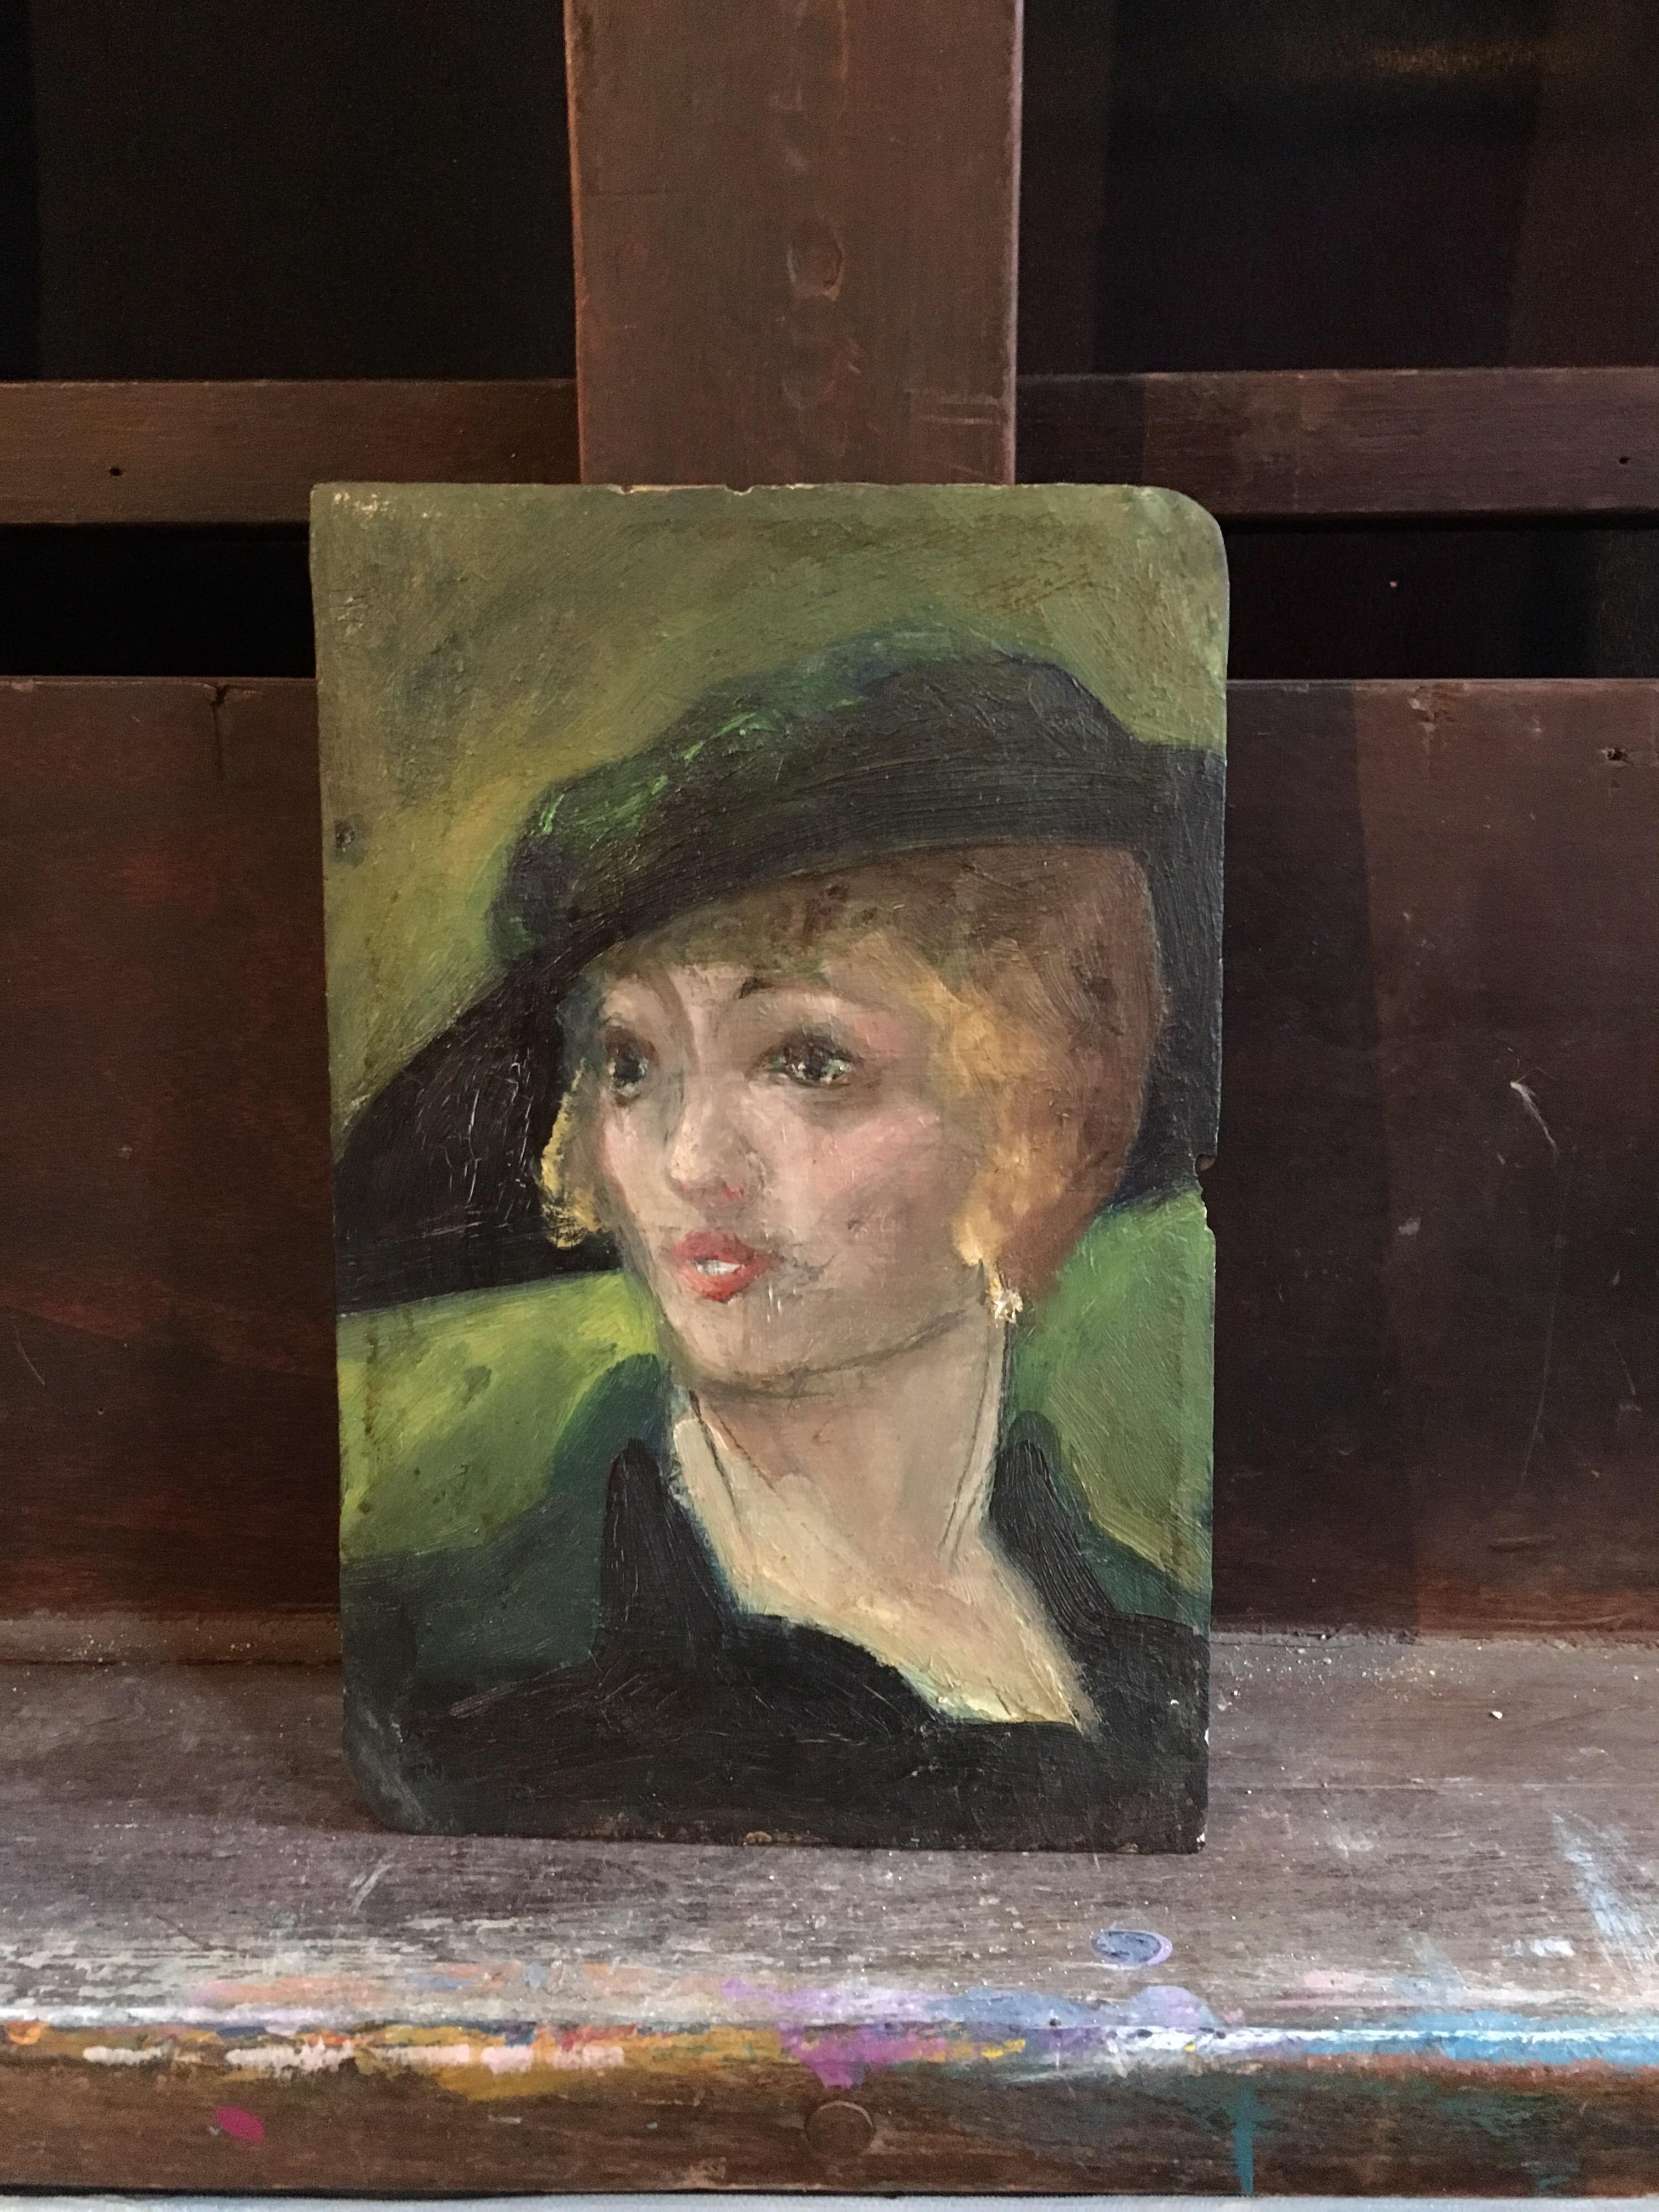 Portrait d'une femme élégante des années 1920, peinture à l'huile britannique
École britannique, début du 20e siècle
Peinture à l'huile sur panneau de bois, non encadrée
Taille du tableau : 9.25 x 6 pouces

Un portrait étonnant d'une femme très